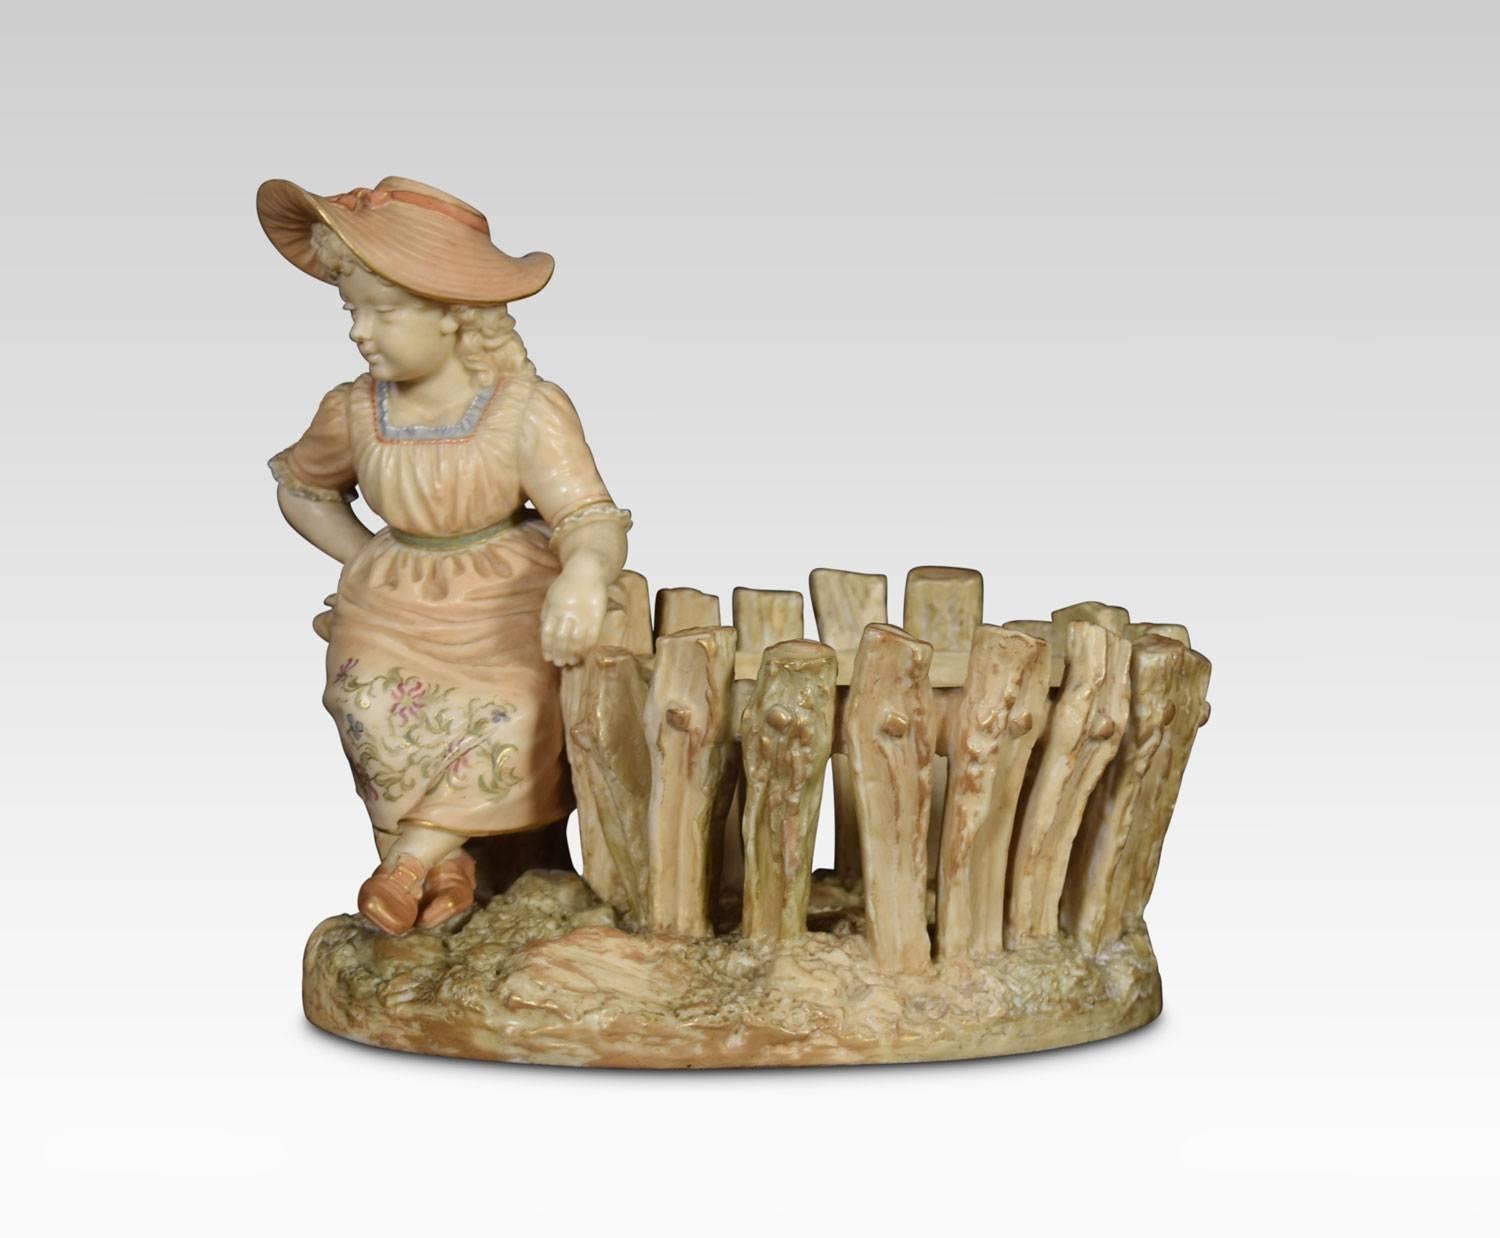 Figurine Royal Worcester Hadley représentant une jeune fille appuyée sur une clôture.
Dimensions :
Hauteur 7 pouces
Largeur 7,5 pouces
Profondeur 6 pouces.